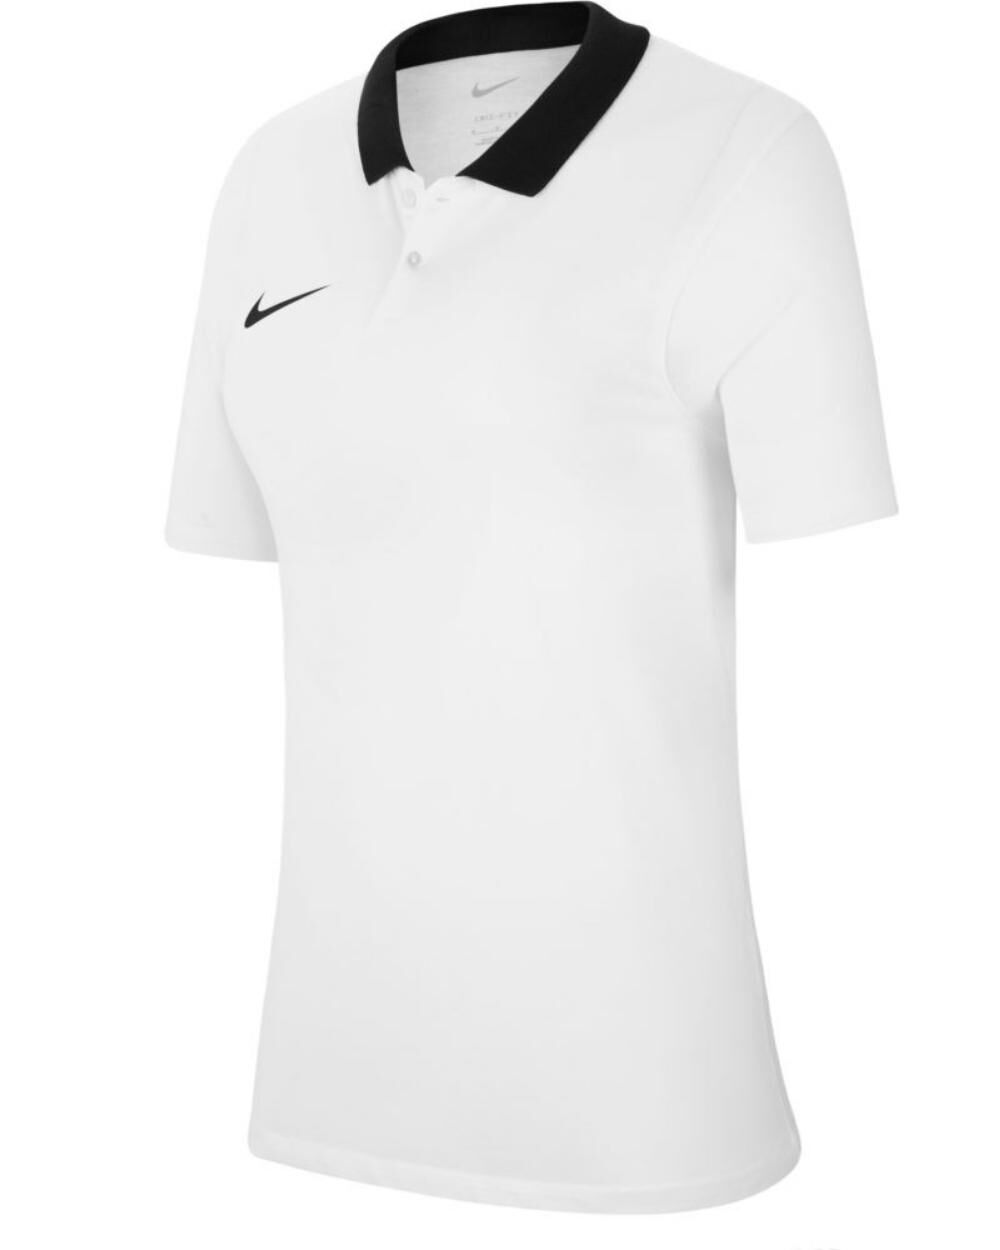 Nike Polo Park 20 Bianco per Donne CW6965-100 XL